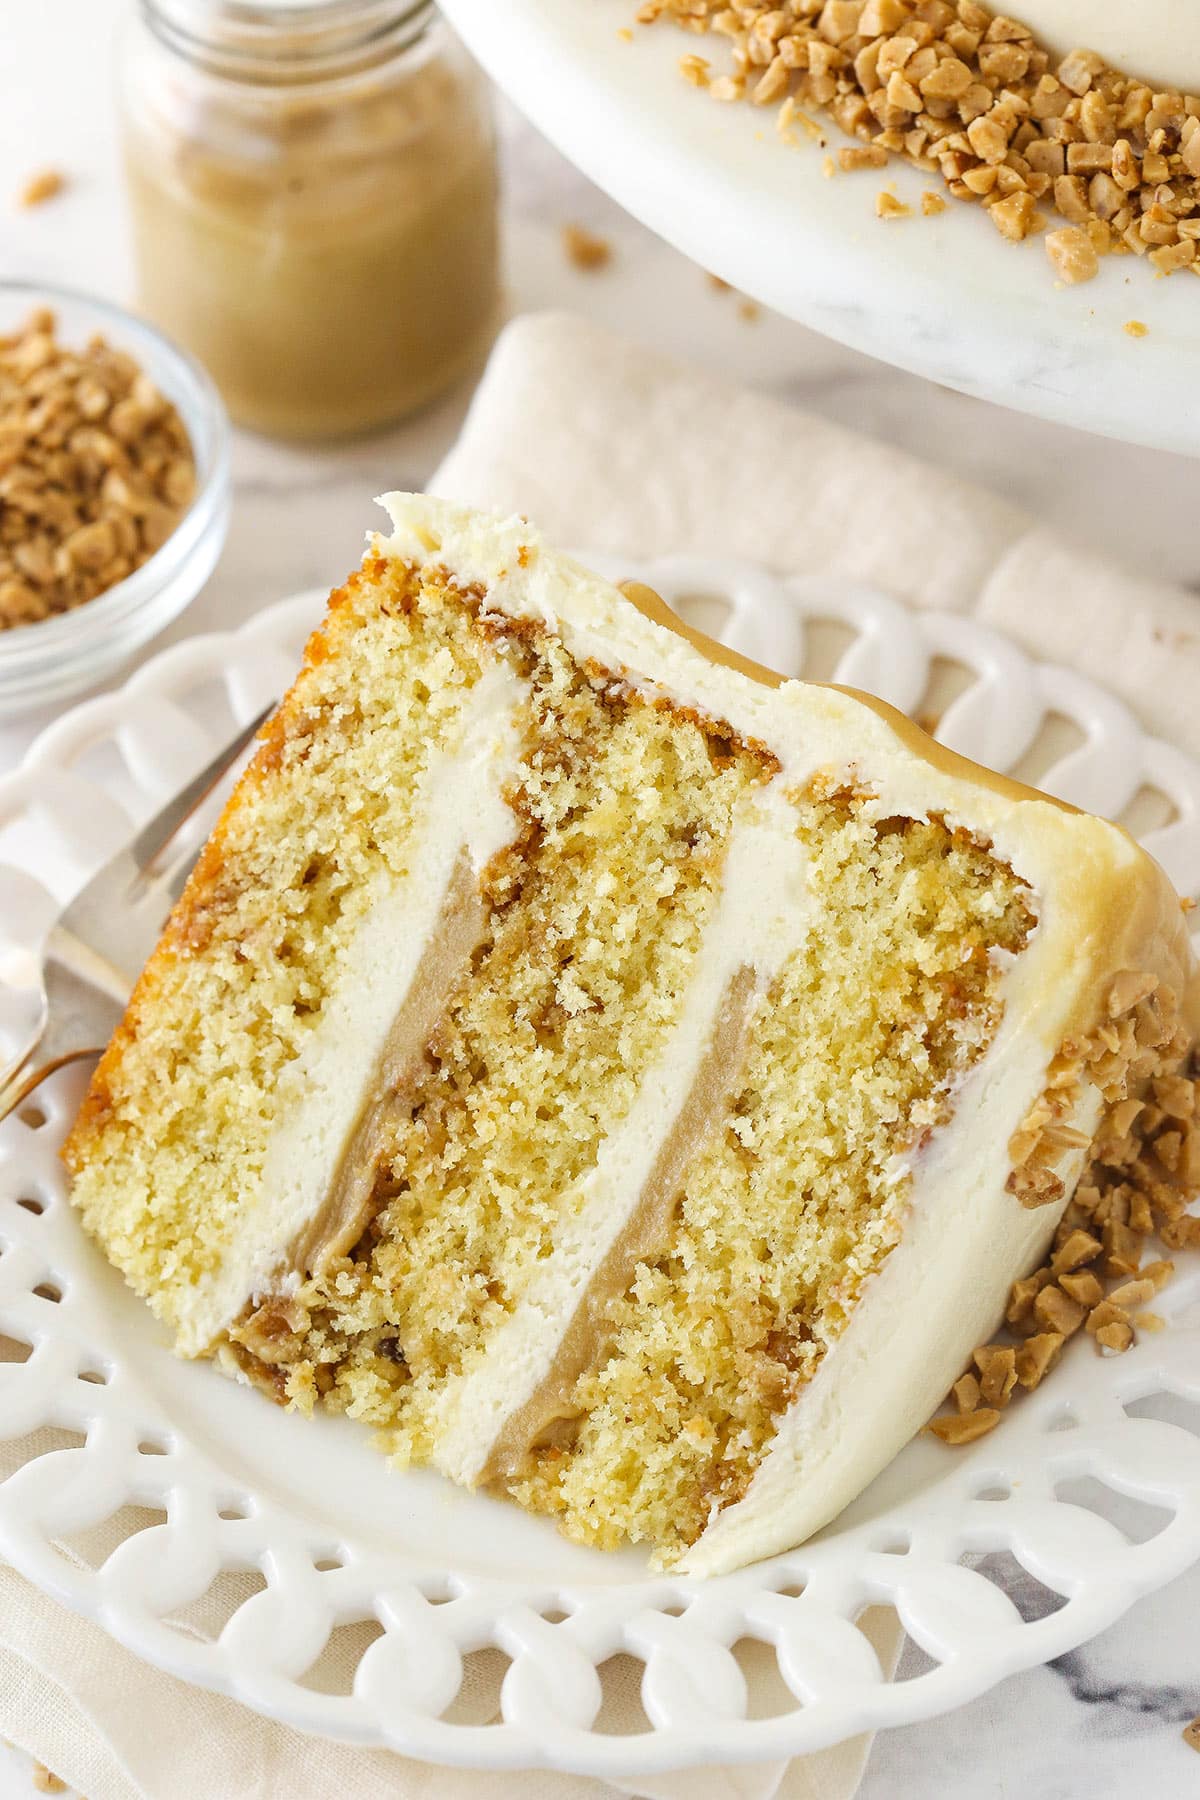 Top more than 123 butter crunch cake best - in.eteachers